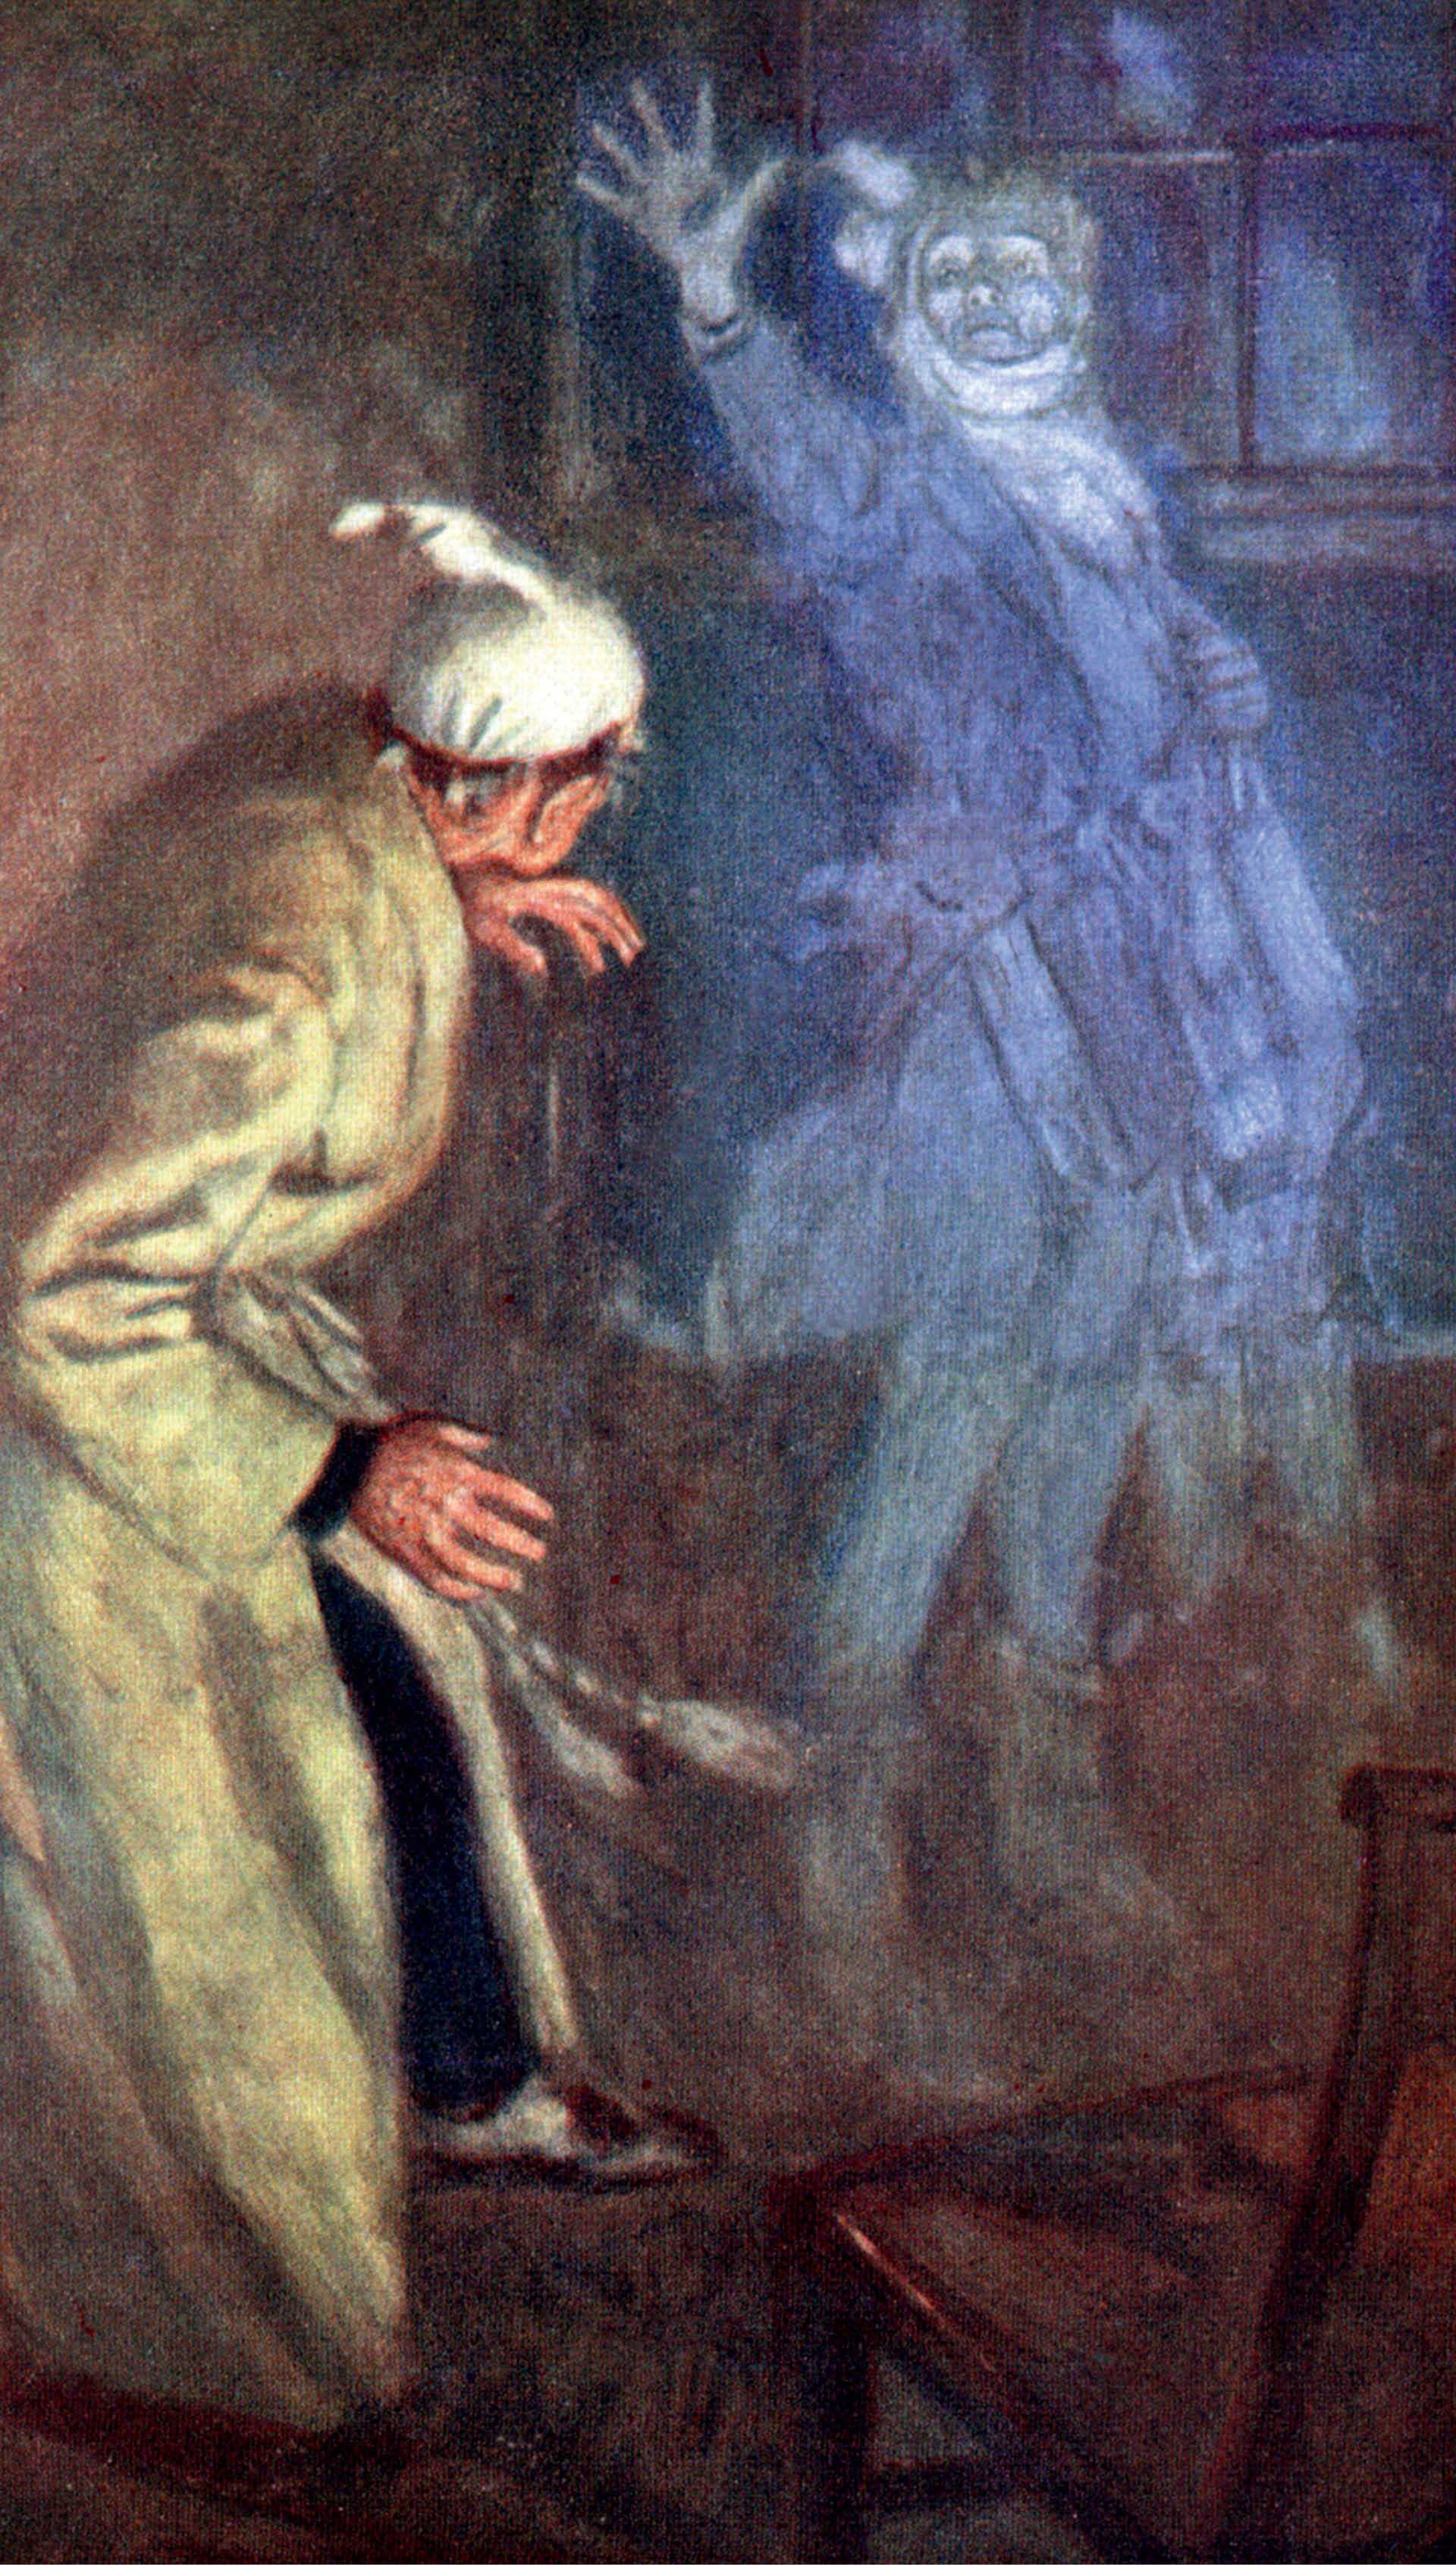 Ilustracja z „Opowieści wigilijnej” Karola Dickensa